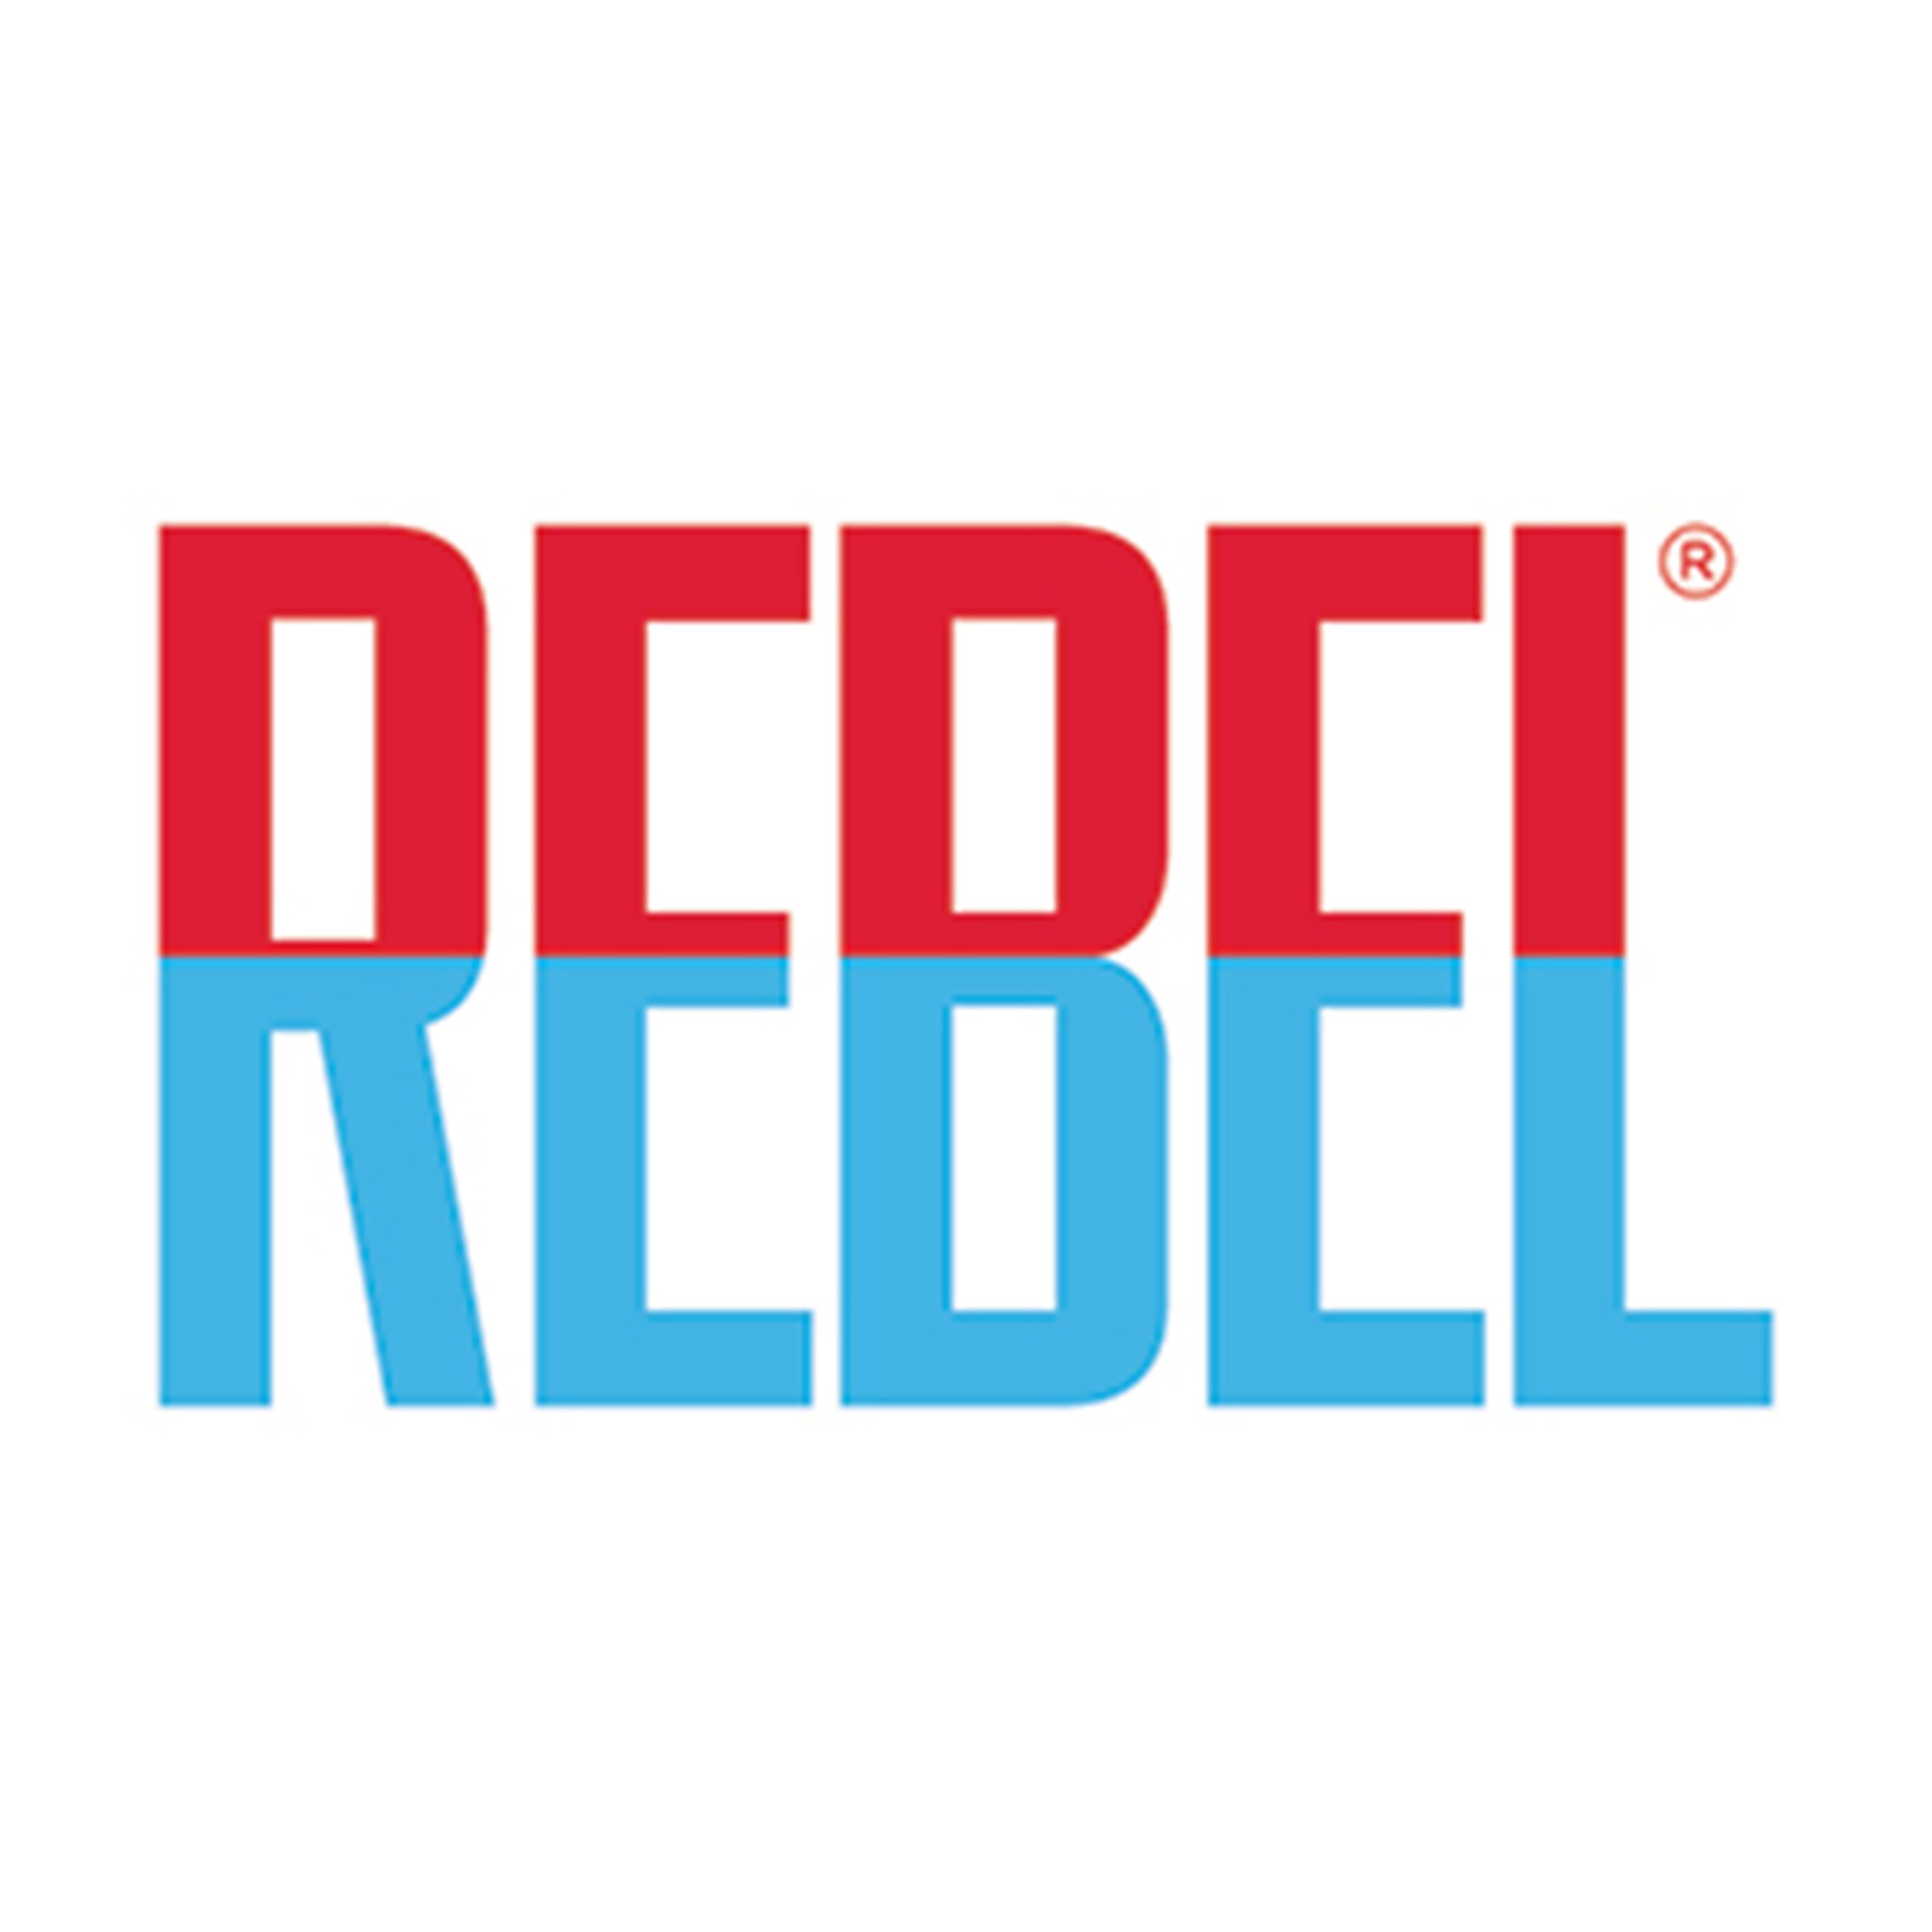 A_Rebel_logo